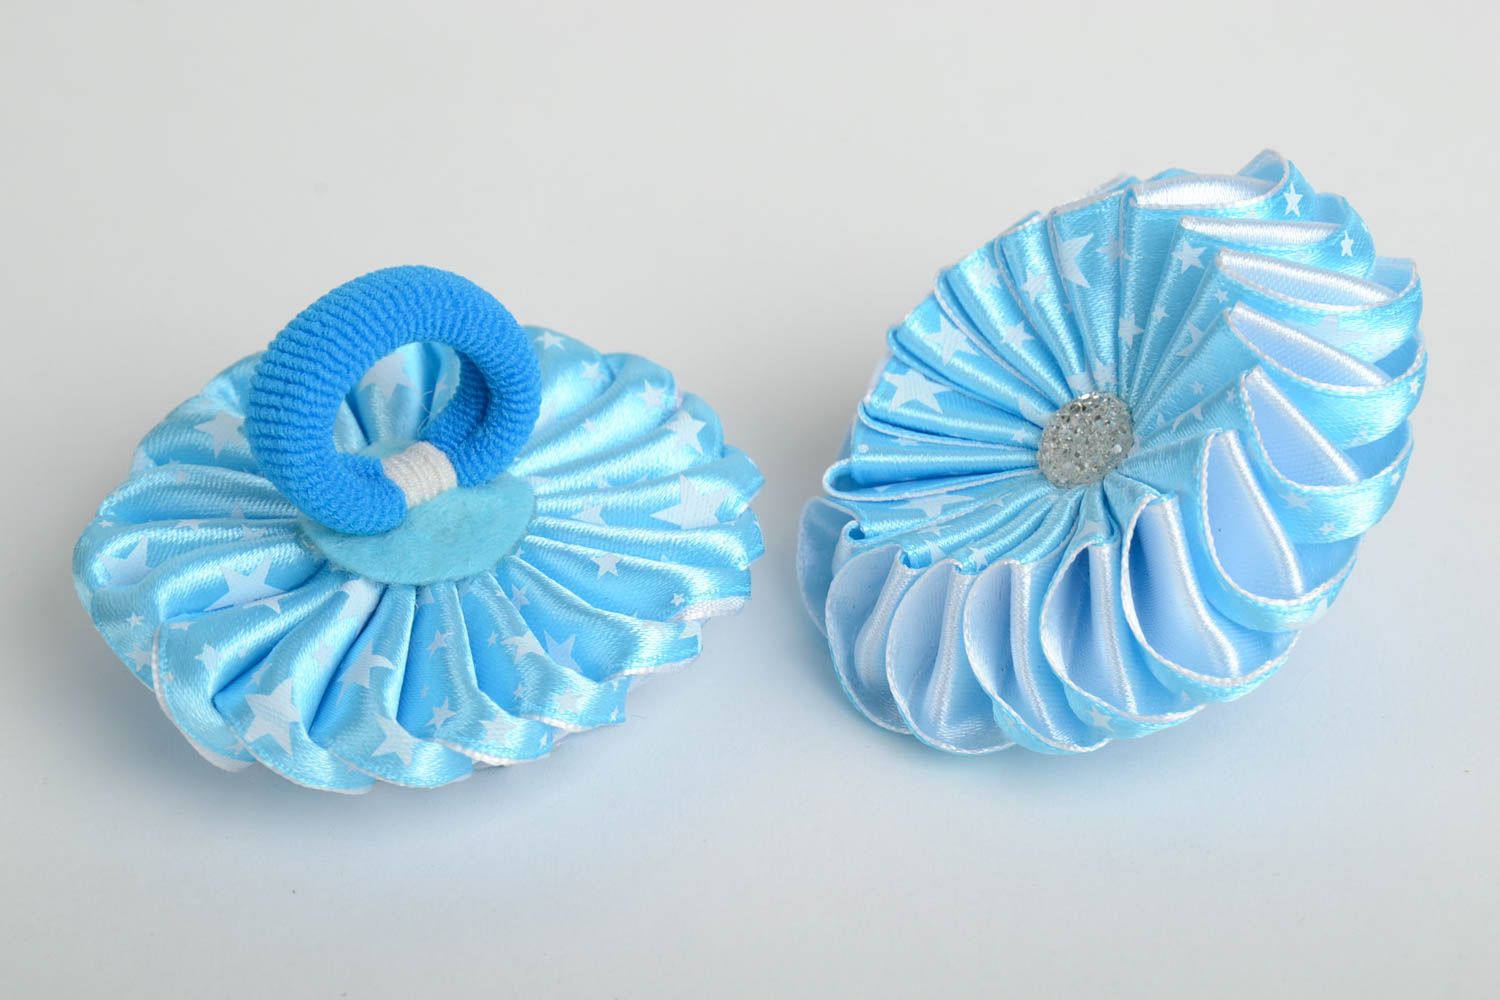 Резинки для волос из атласных лент голубые в технике канзаши набор 2 аксессуара фото 5